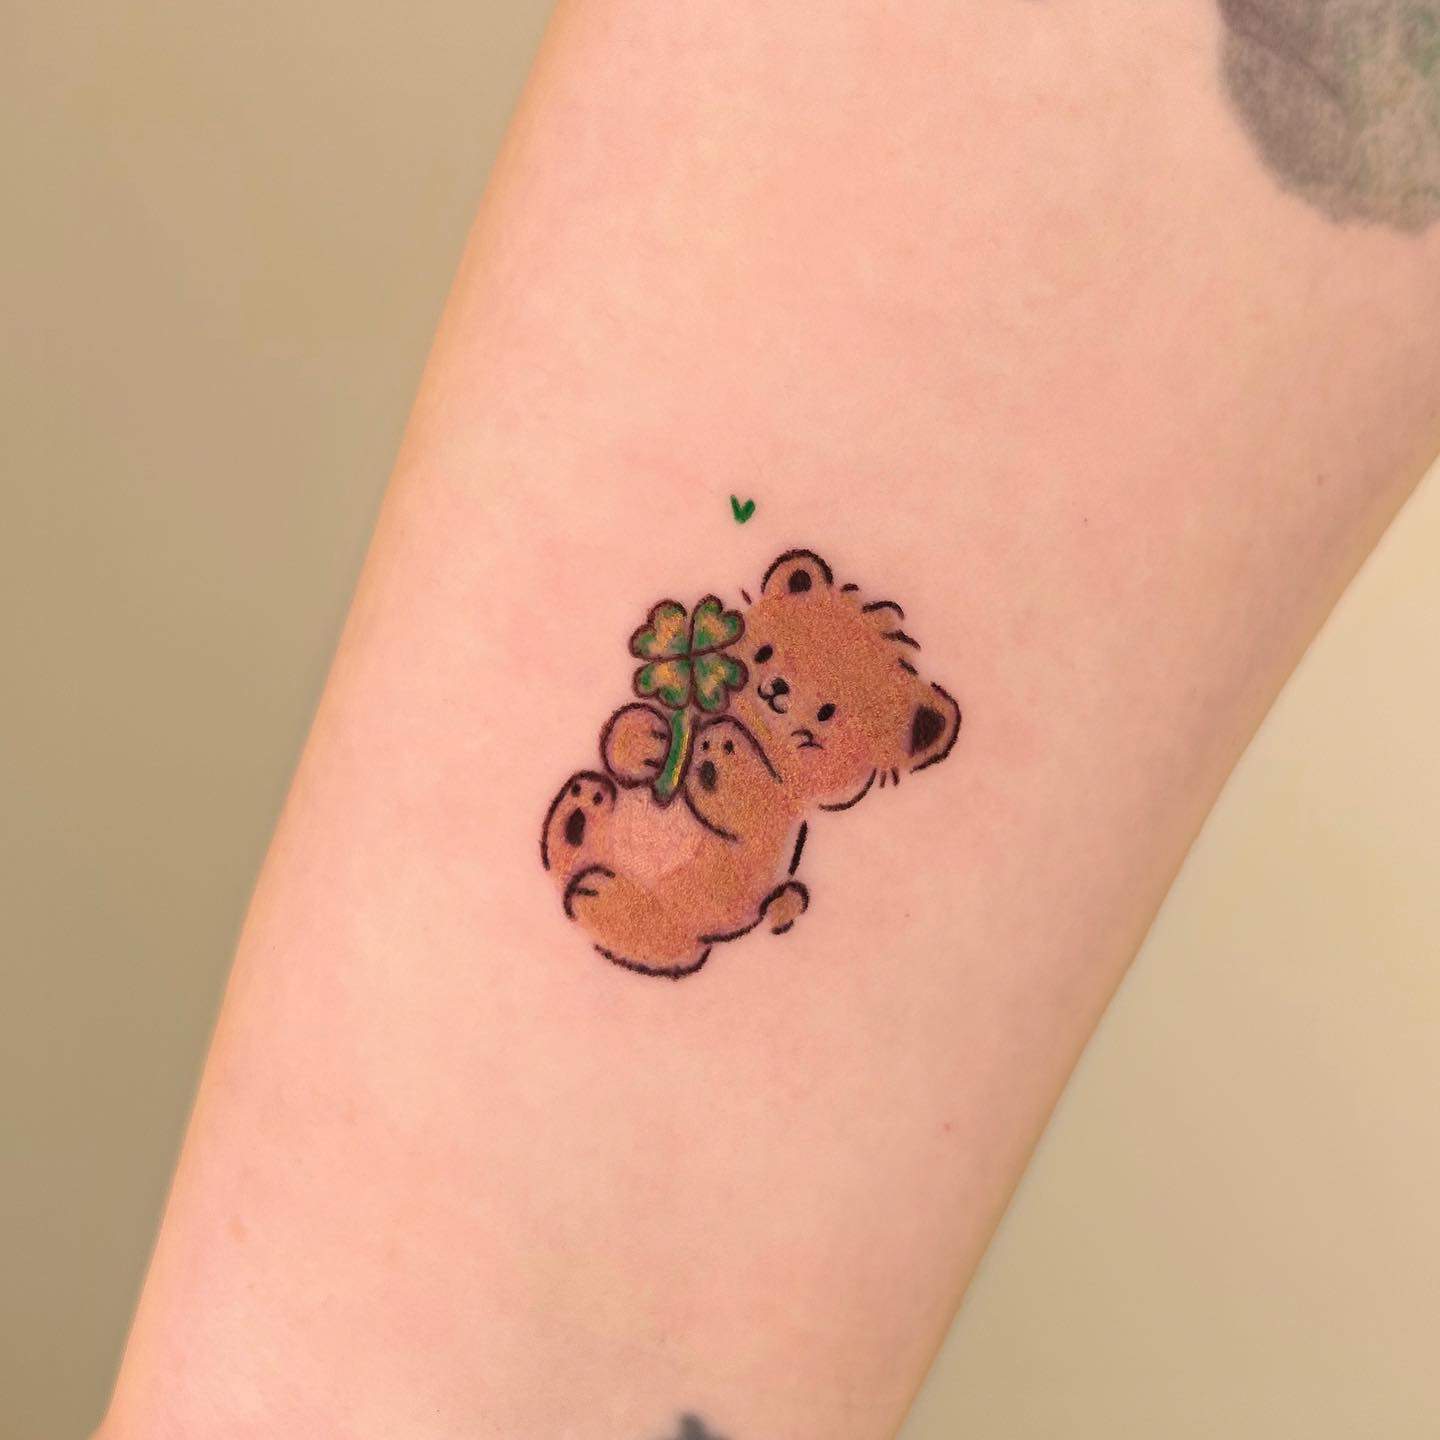 Realistic Temporary Waterproof Tattoos Cute Teddy Bear Body Art Sticker  Sheet  eBay